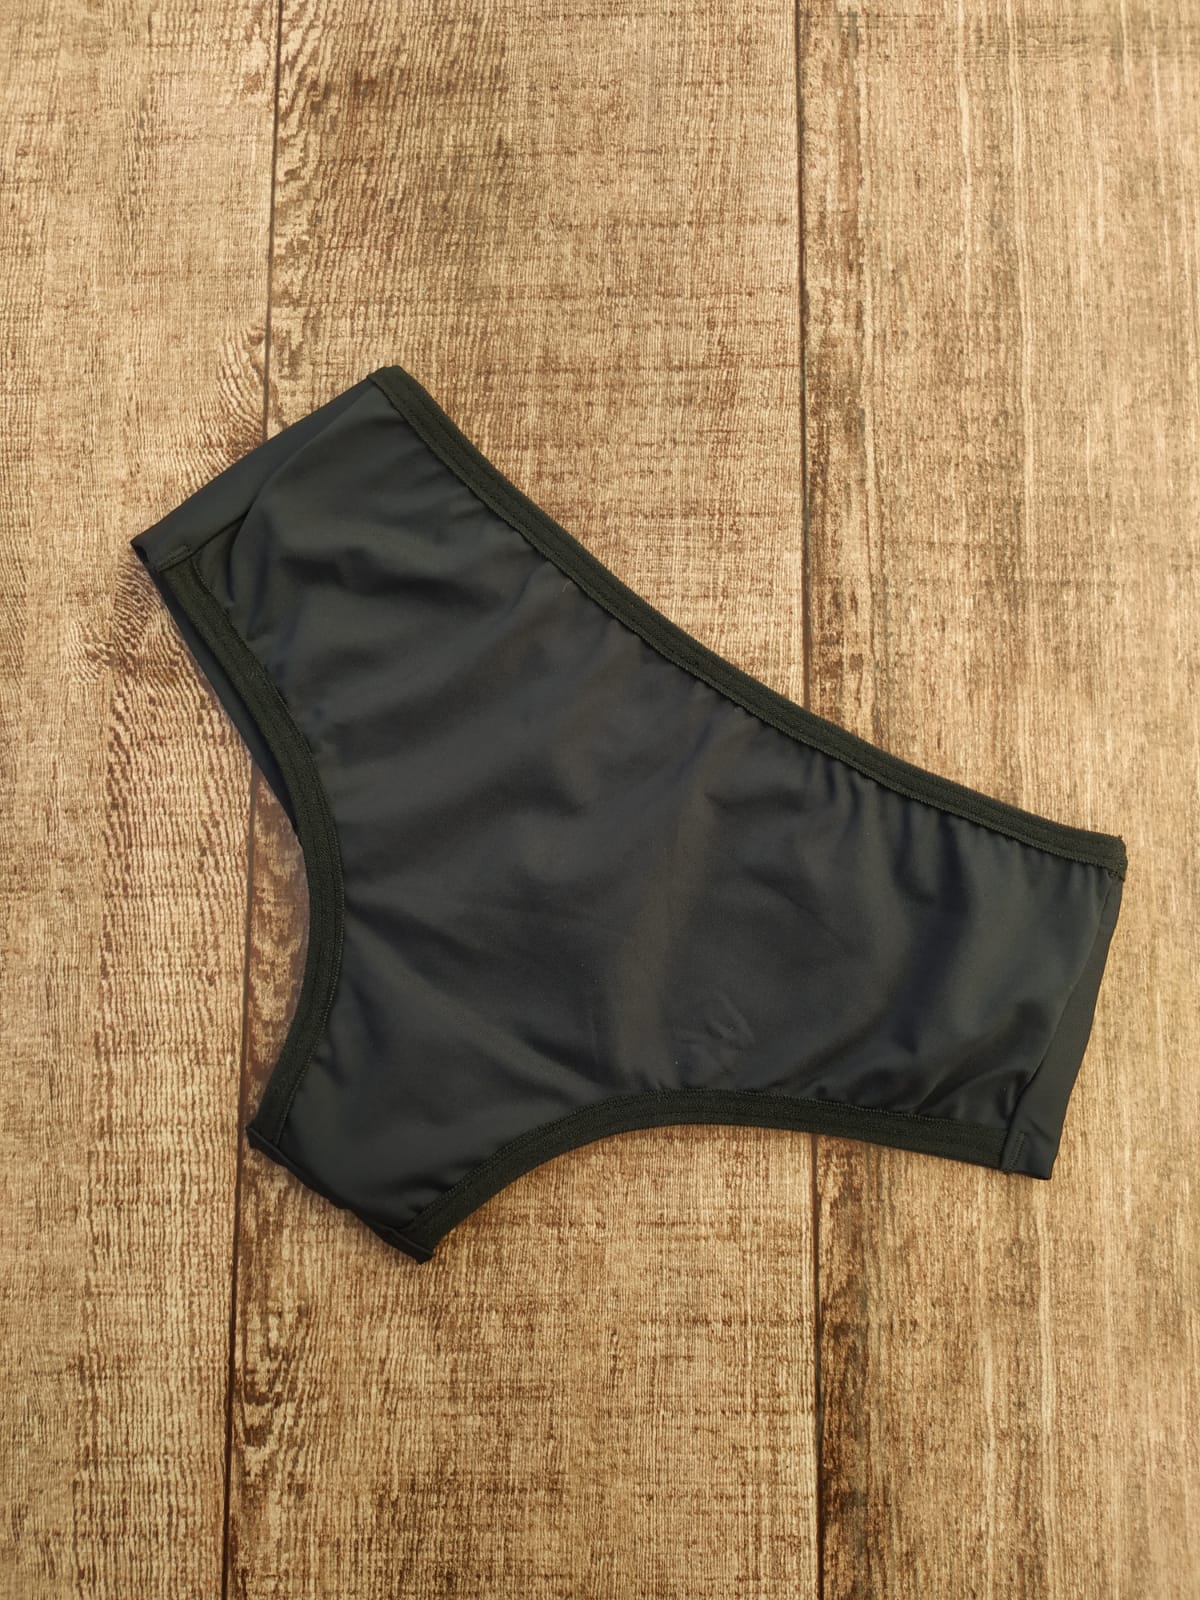 calcinha microfibra maçã lingerie atacado distribuidora de lingerie fabrica de lingerie scaled